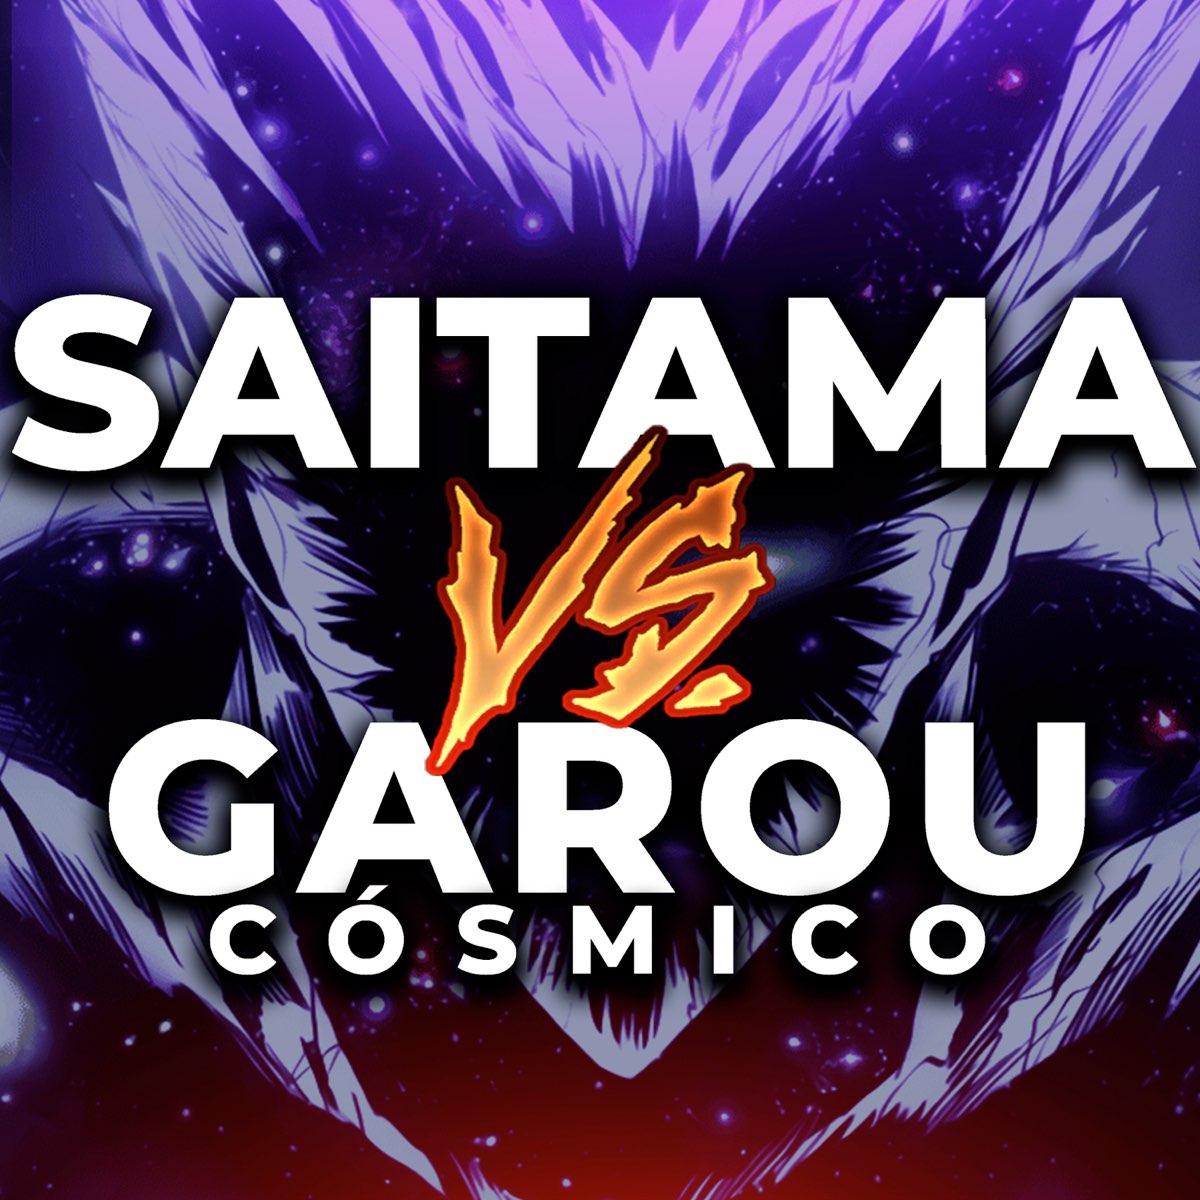 Saitama Vs. Garou Cósmico - Song by Adlomusic - Apple Music